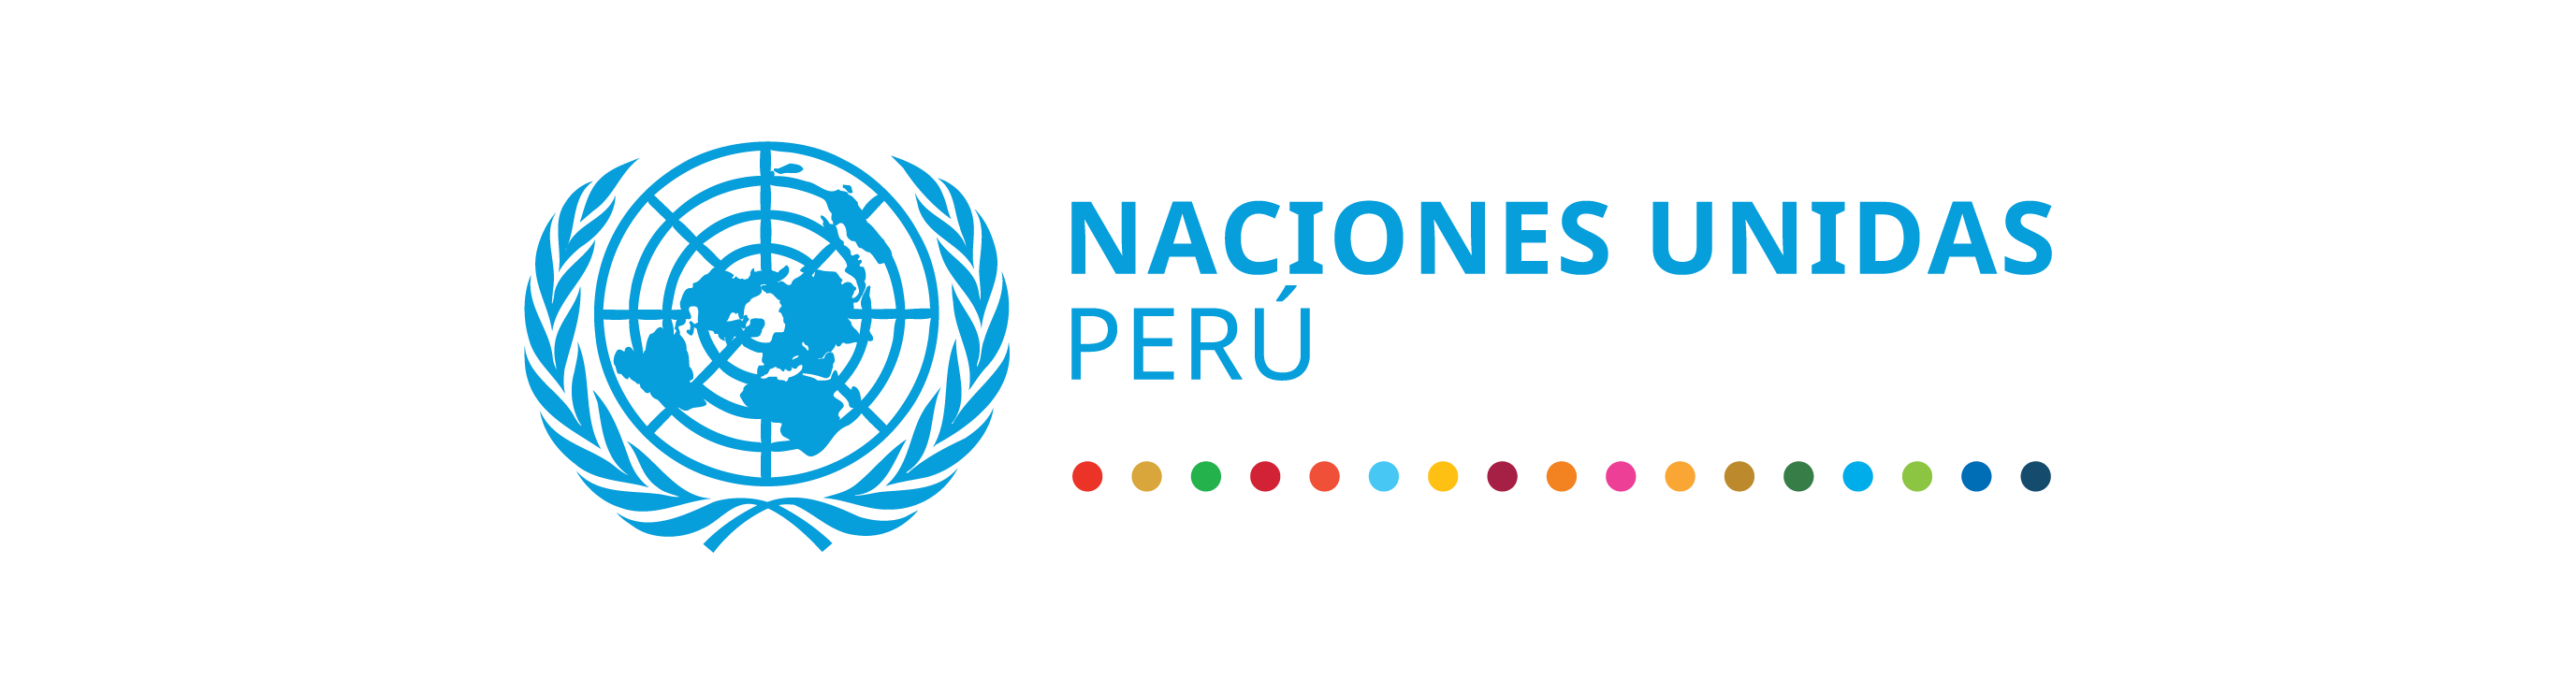 Naciones Unidas Peru